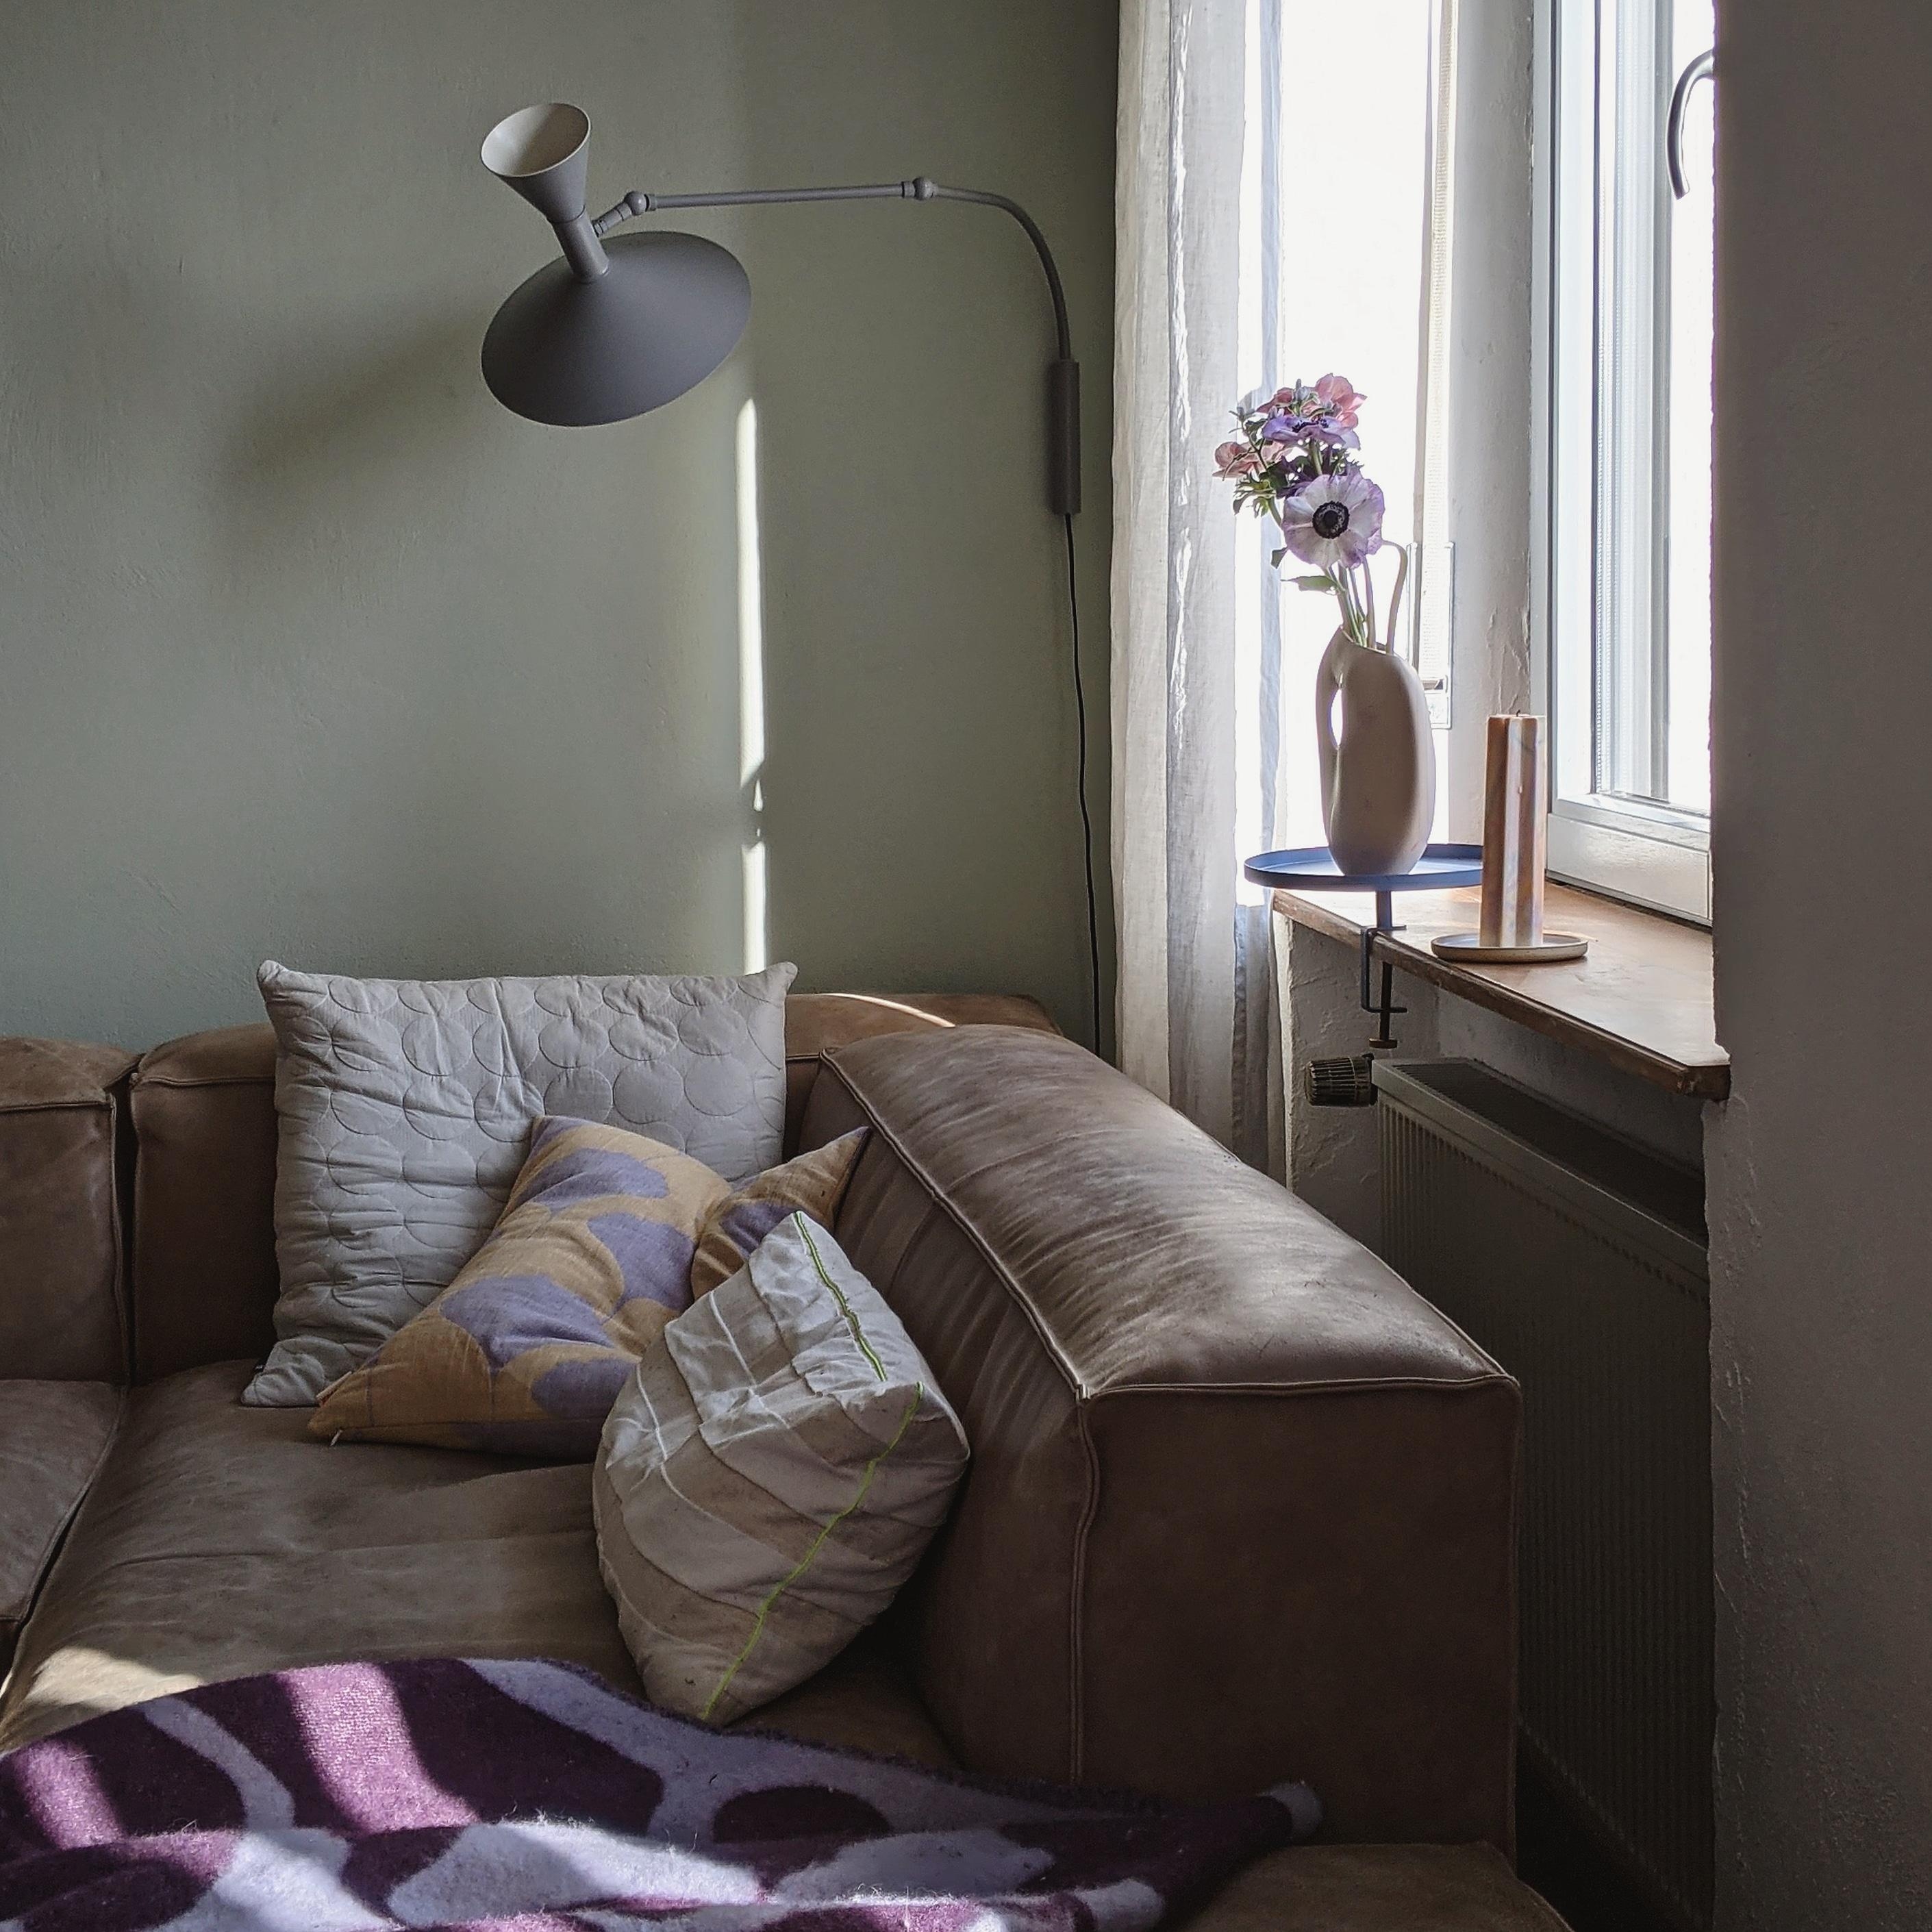 #livingroom #homedecor #interior#decoration#altbau #homestory#hygge#wohnzimmer #couchstyle#scandinavisch#living#cozy